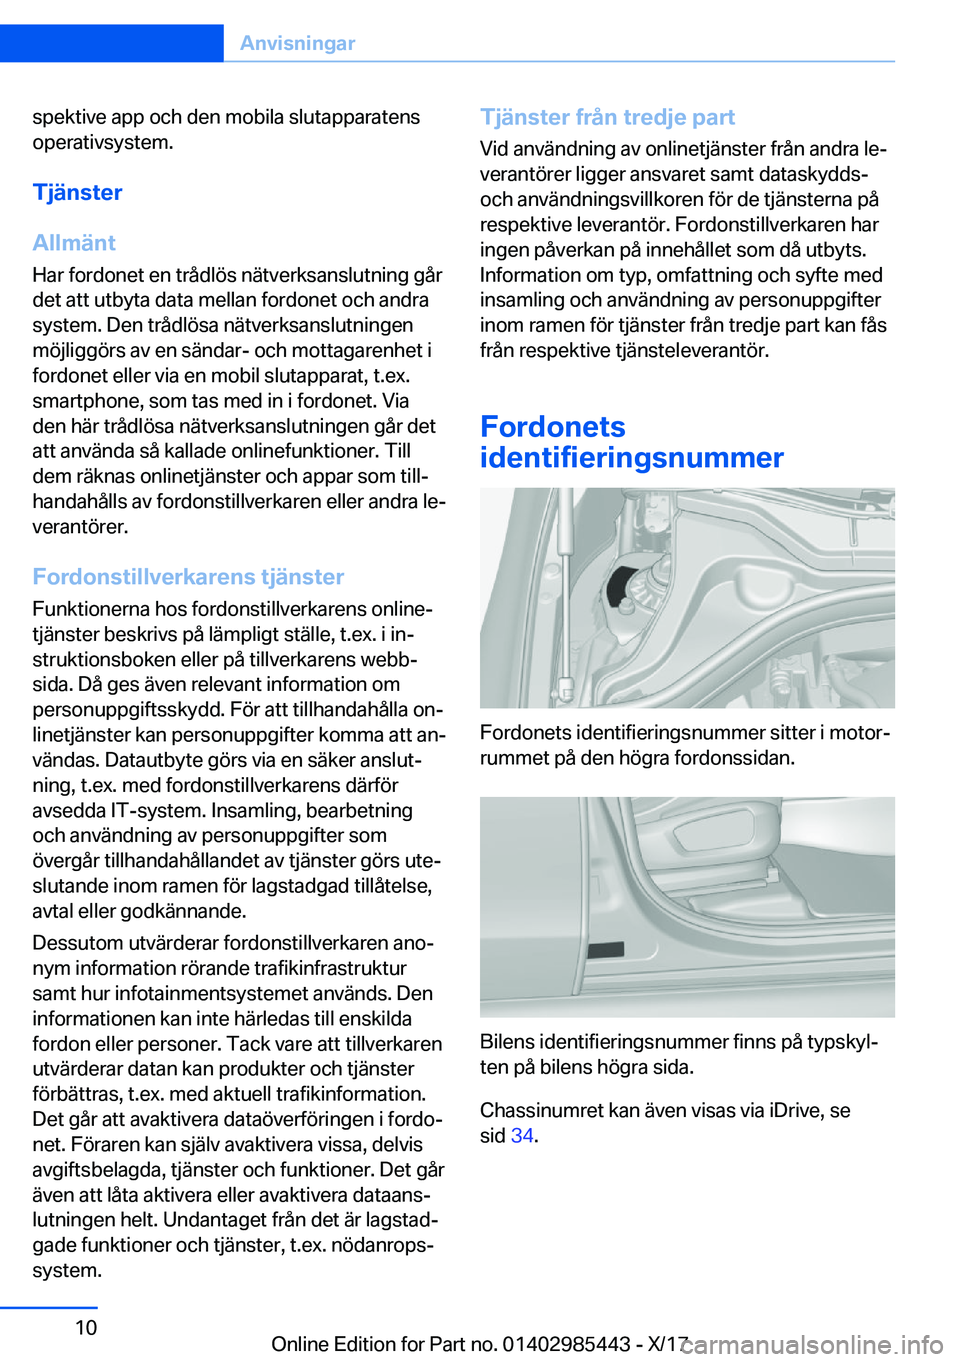 BMW X1 2018  InstruktionsbÖcker (in Swedish) �s�p�e�k�t�i�v�e� �a�p�p� �o�c�h� �d�e�n� �m�o�b�i�l�a� �s�l�u�t�a�p�p�a�r�a�t�e�n�s
�o�p�e�r�a�t�i�v�s�y�s�t�e�m�.
�T�j�ä�n�s�t�e�r
�A�l�l�m�ä�n�t
�H�a�r� �f�o�r�d�o�n�e�t� �e�n� �t�r�å�d�l�